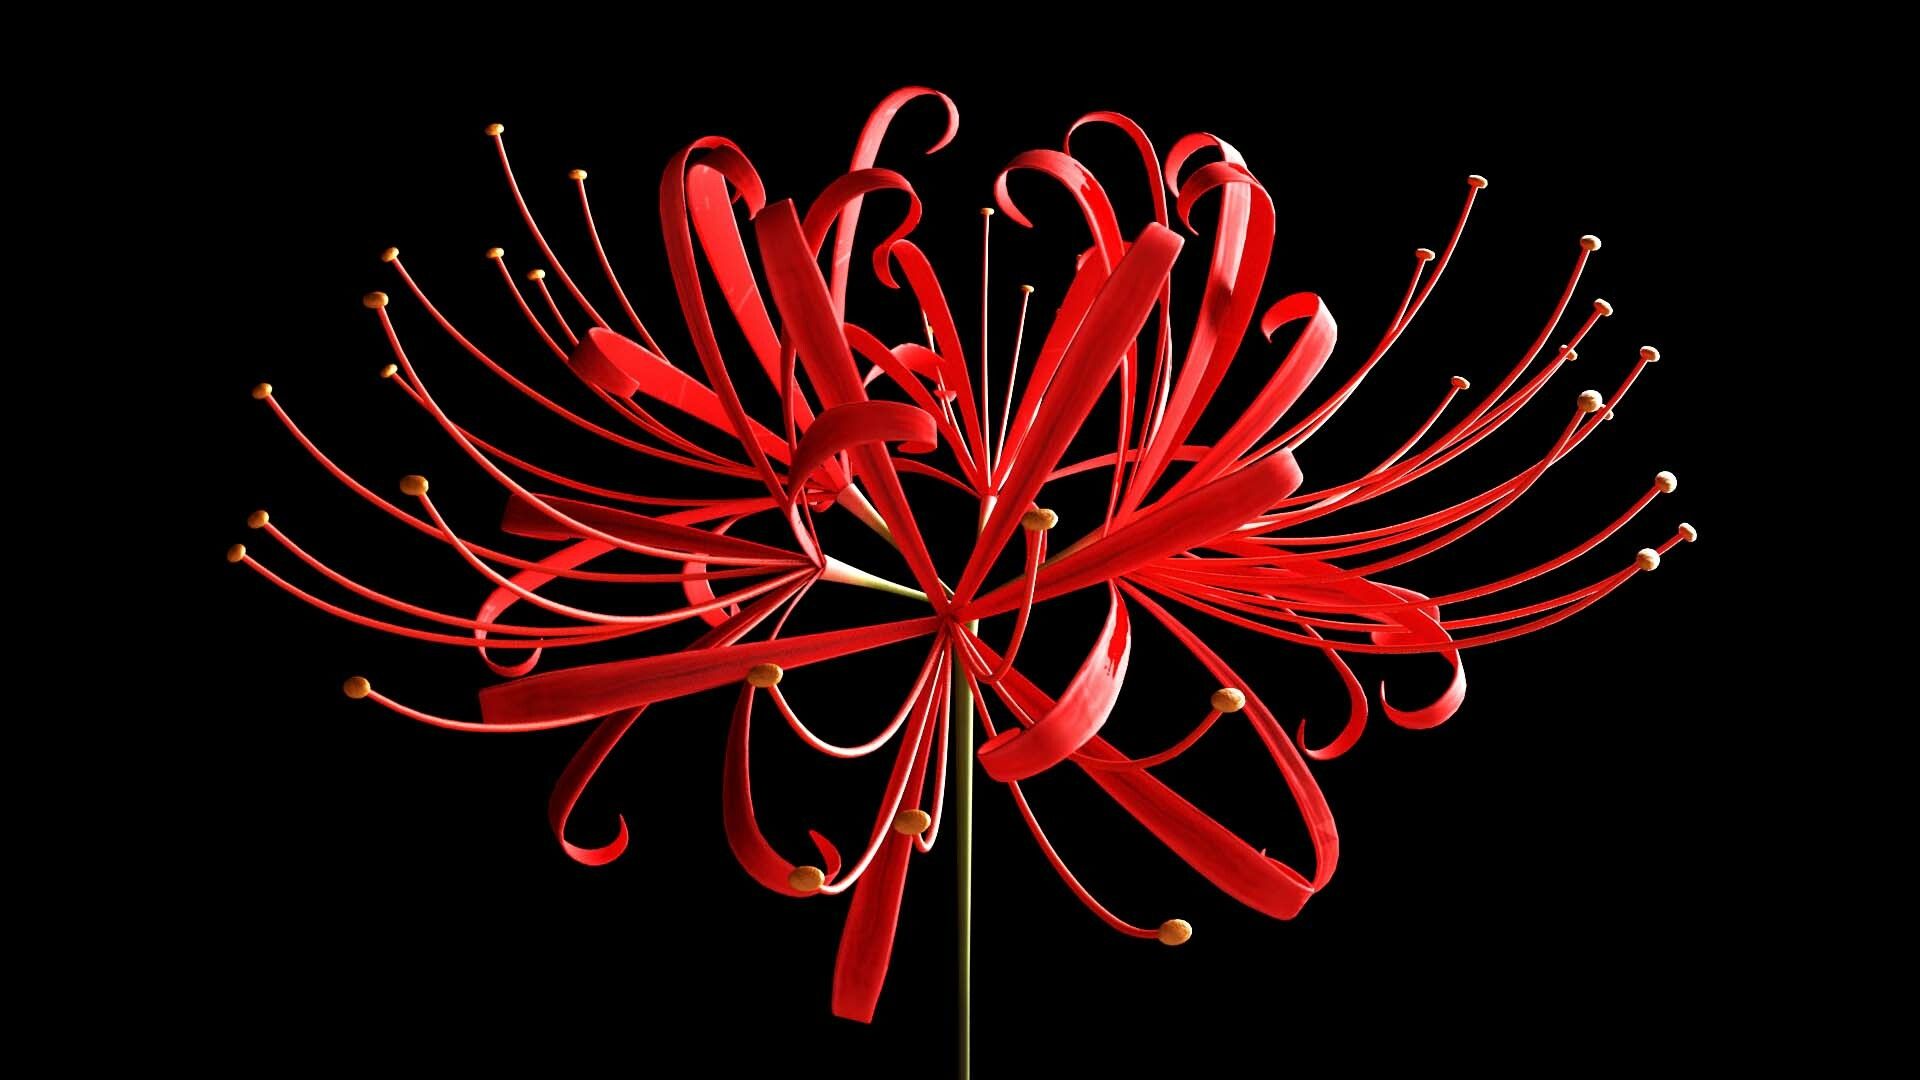 Red Spider Lily Wallpapers: Bạn là người yêu thích trang trí máy tính của mình với những hình nền đẹp mắt? Hãy thử tải về Red Spider Lily Wallpapers để làm mới không gian làm việc của bạn với những hình ảnh tươi trẻ và sặc sỡ.